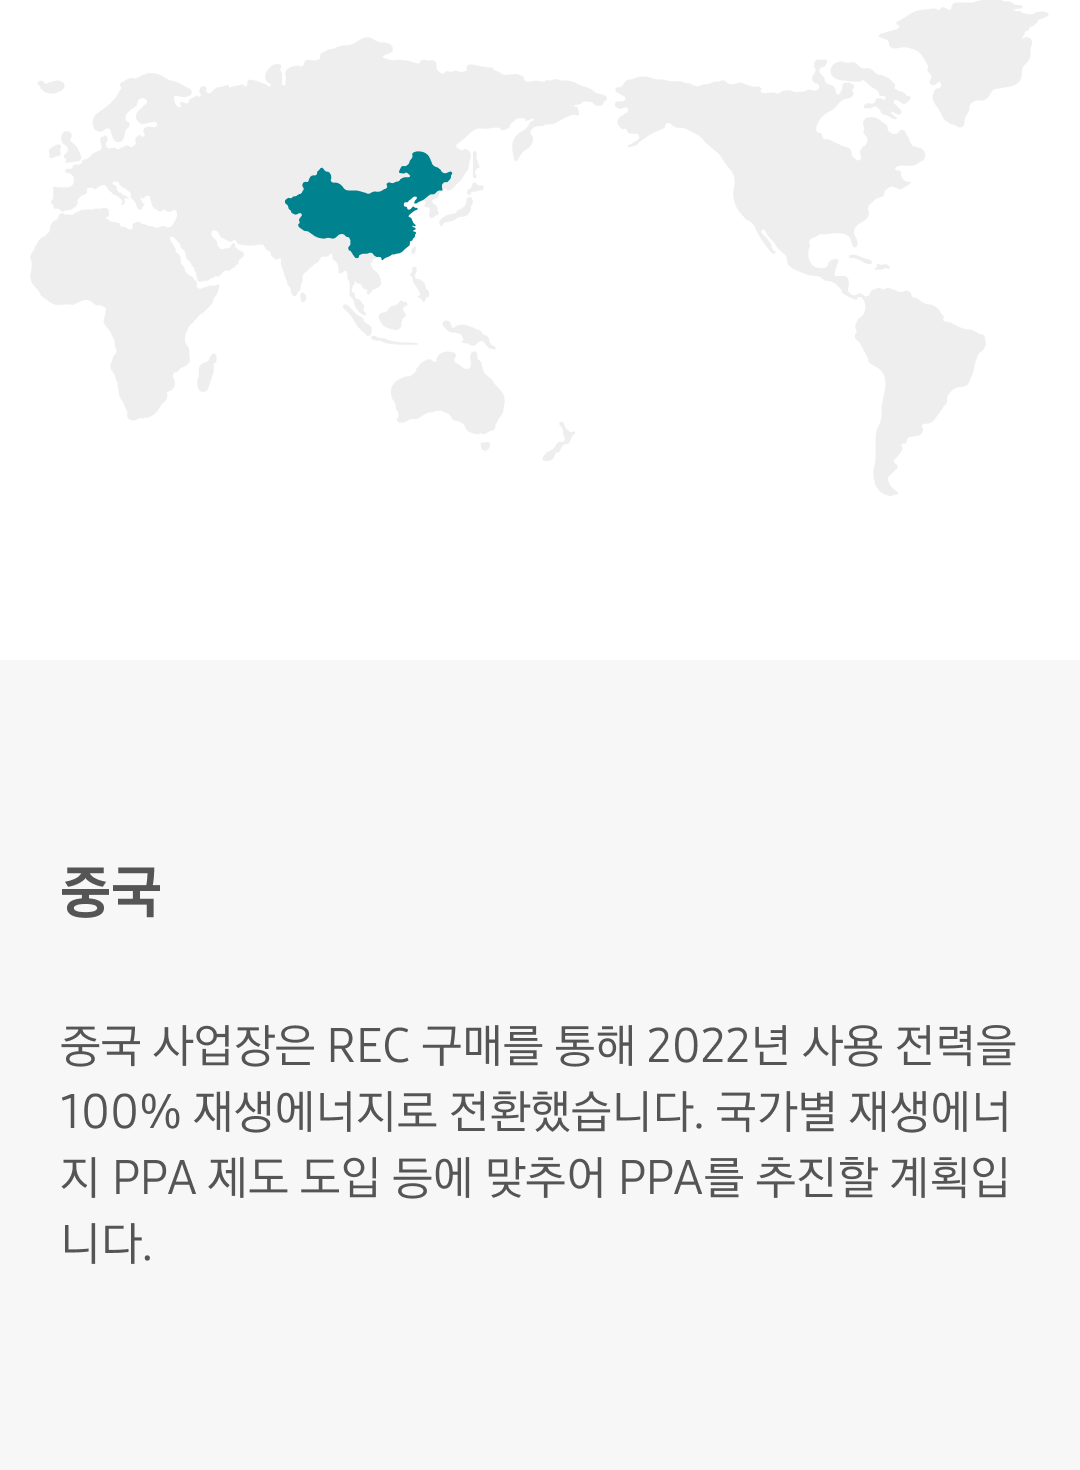 중국 사업장은 REC 구매를 통해 2022년 사용 전력을 100% 재생에너지로 전환했습니다. 국가별 재생에너지 PPA 제도 도입 등에 맞추어 PPA를 추진할 계획입니다.